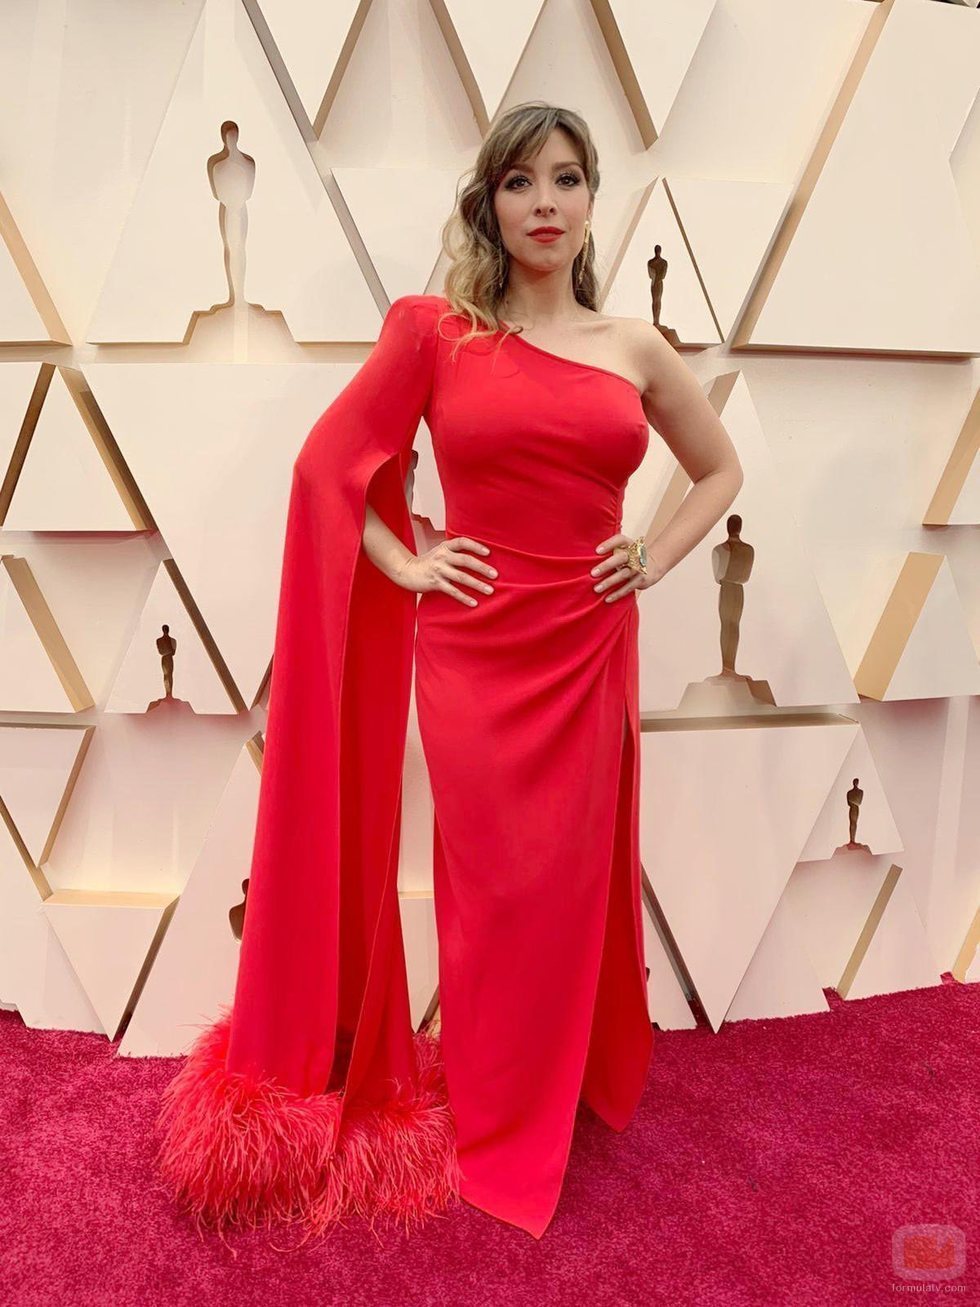 Gisela posa en la alfombra roja de los Premios Oscar 2020